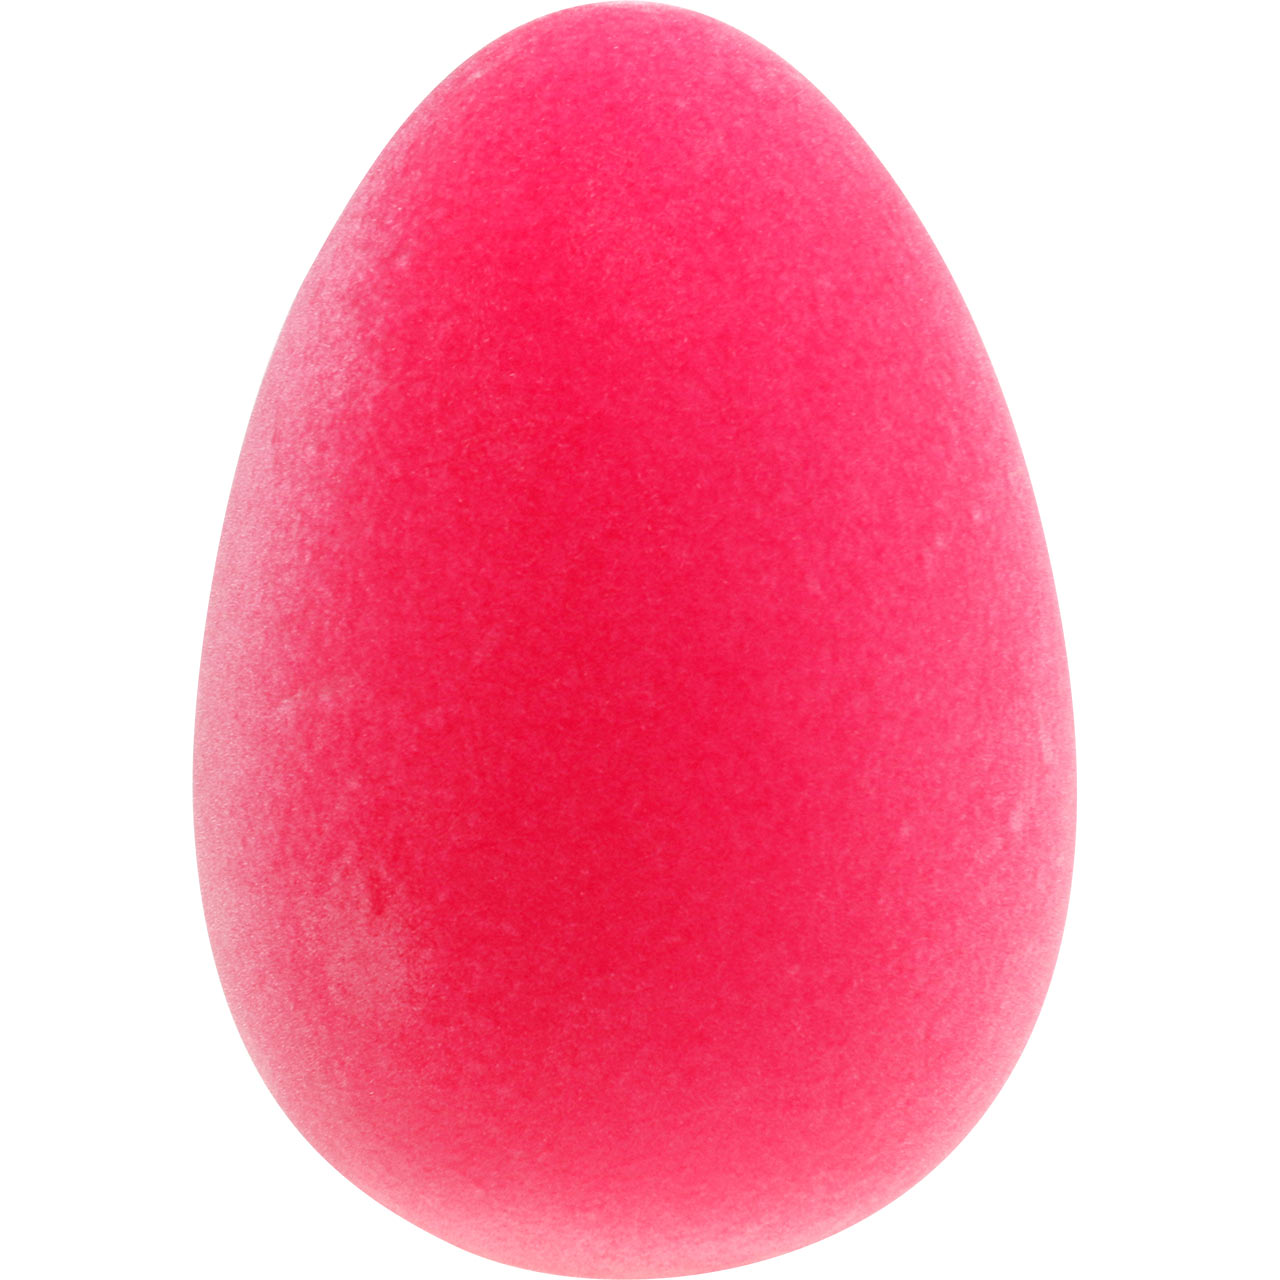 Jajko wielkanocne Różowe W25cm Jajko flokowane Dekoracja wielkanocna Ozdoba  w kształcie jajka-12691 , kup tanio przez Internet